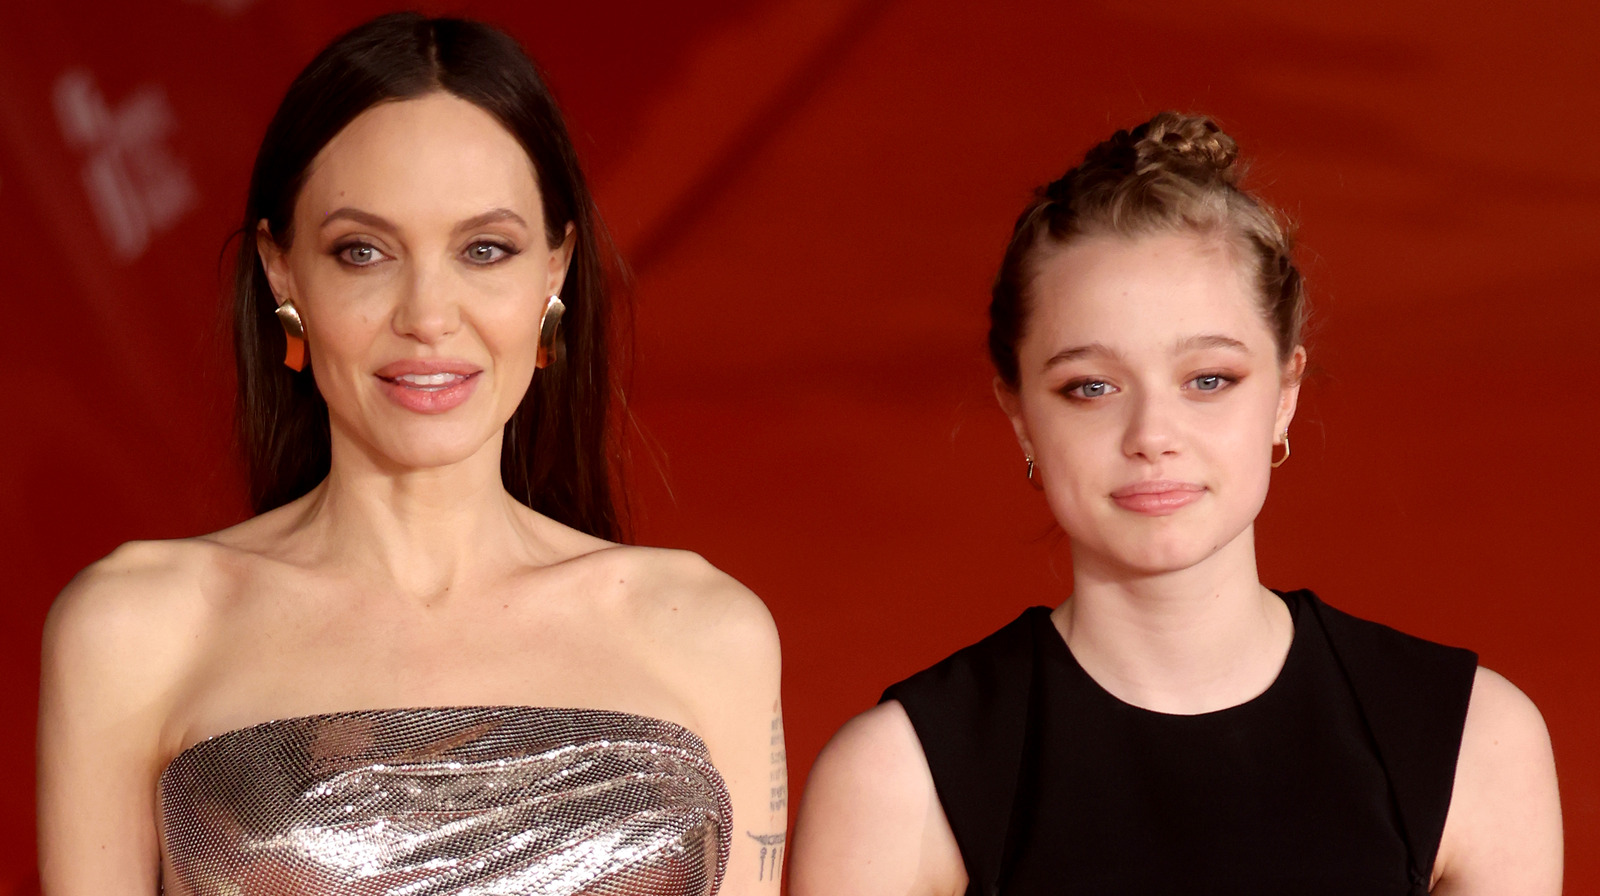 El drama que rodea la convivencia entre Shiloh Jolie-Pitt y Brad, explicado